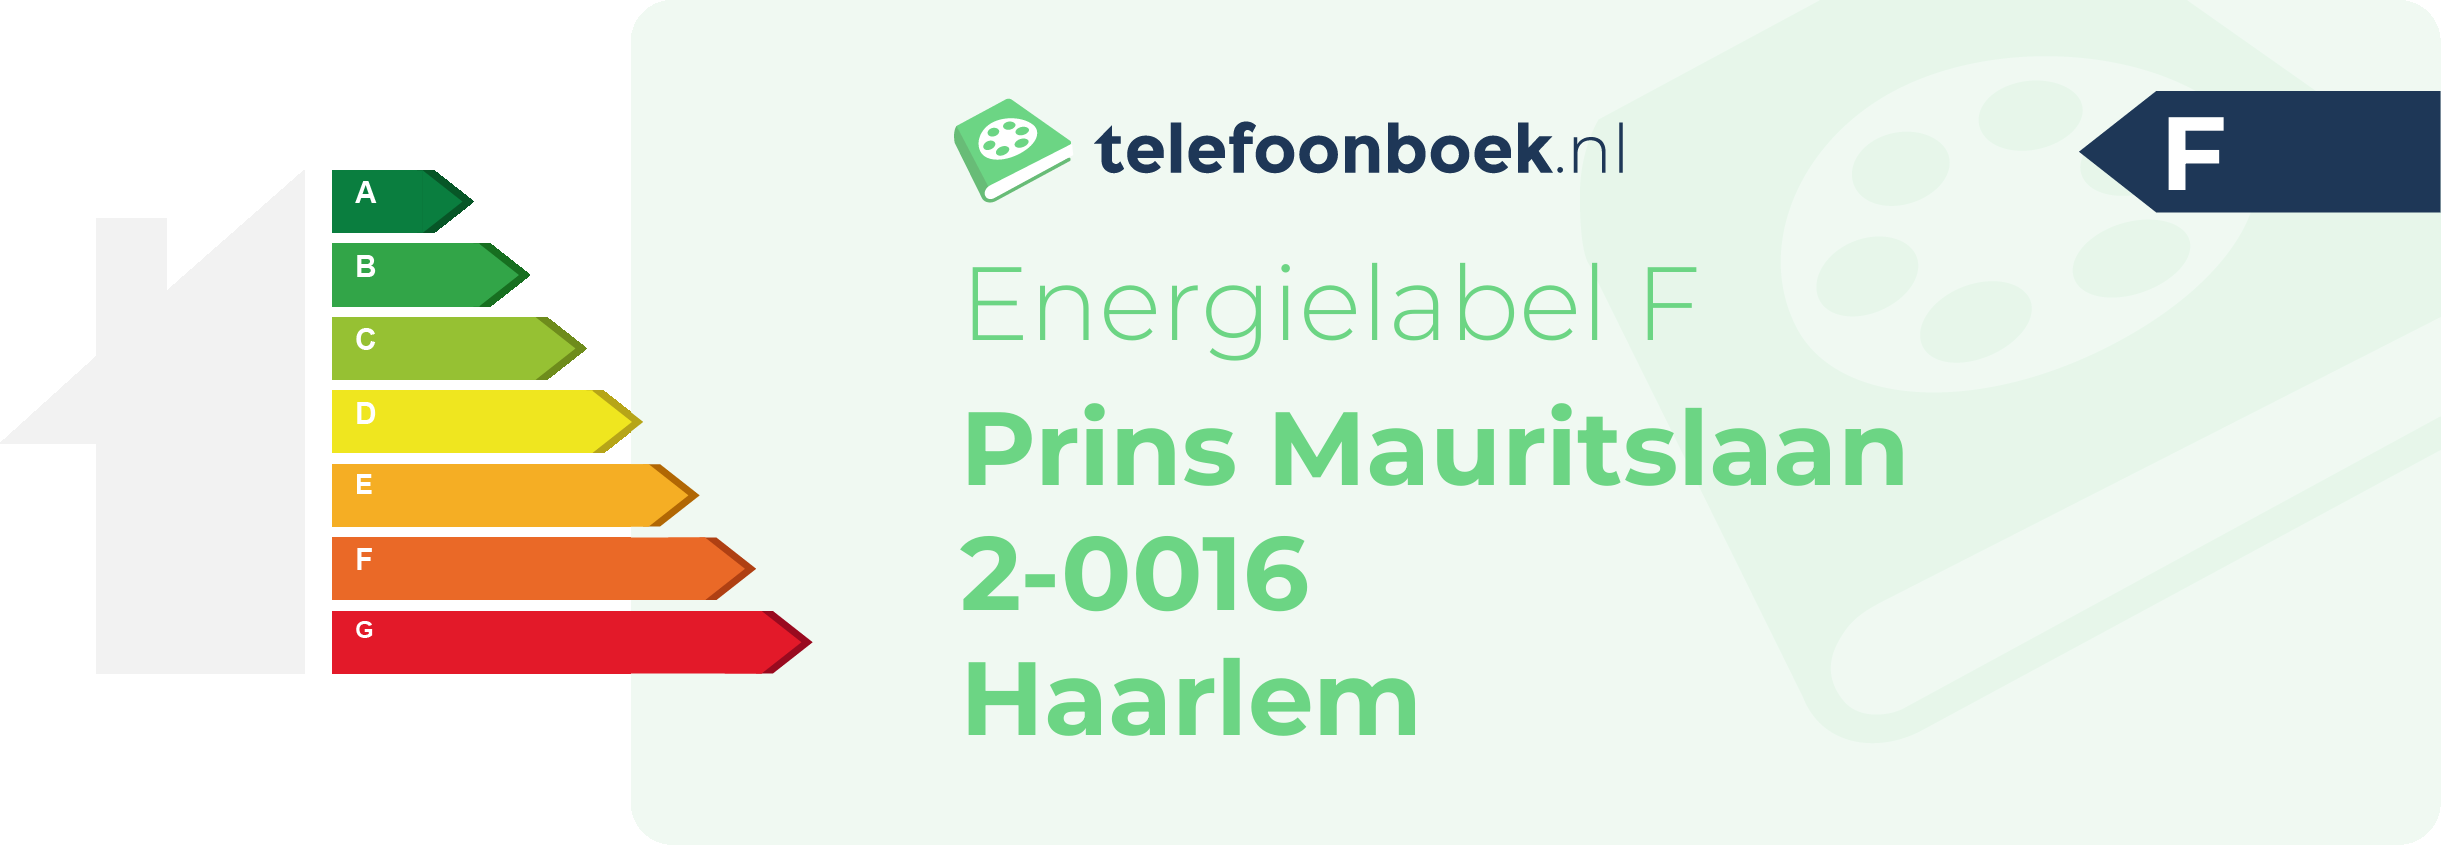 Energielabel Prins Mauritslaan 2-0016 Haarlem